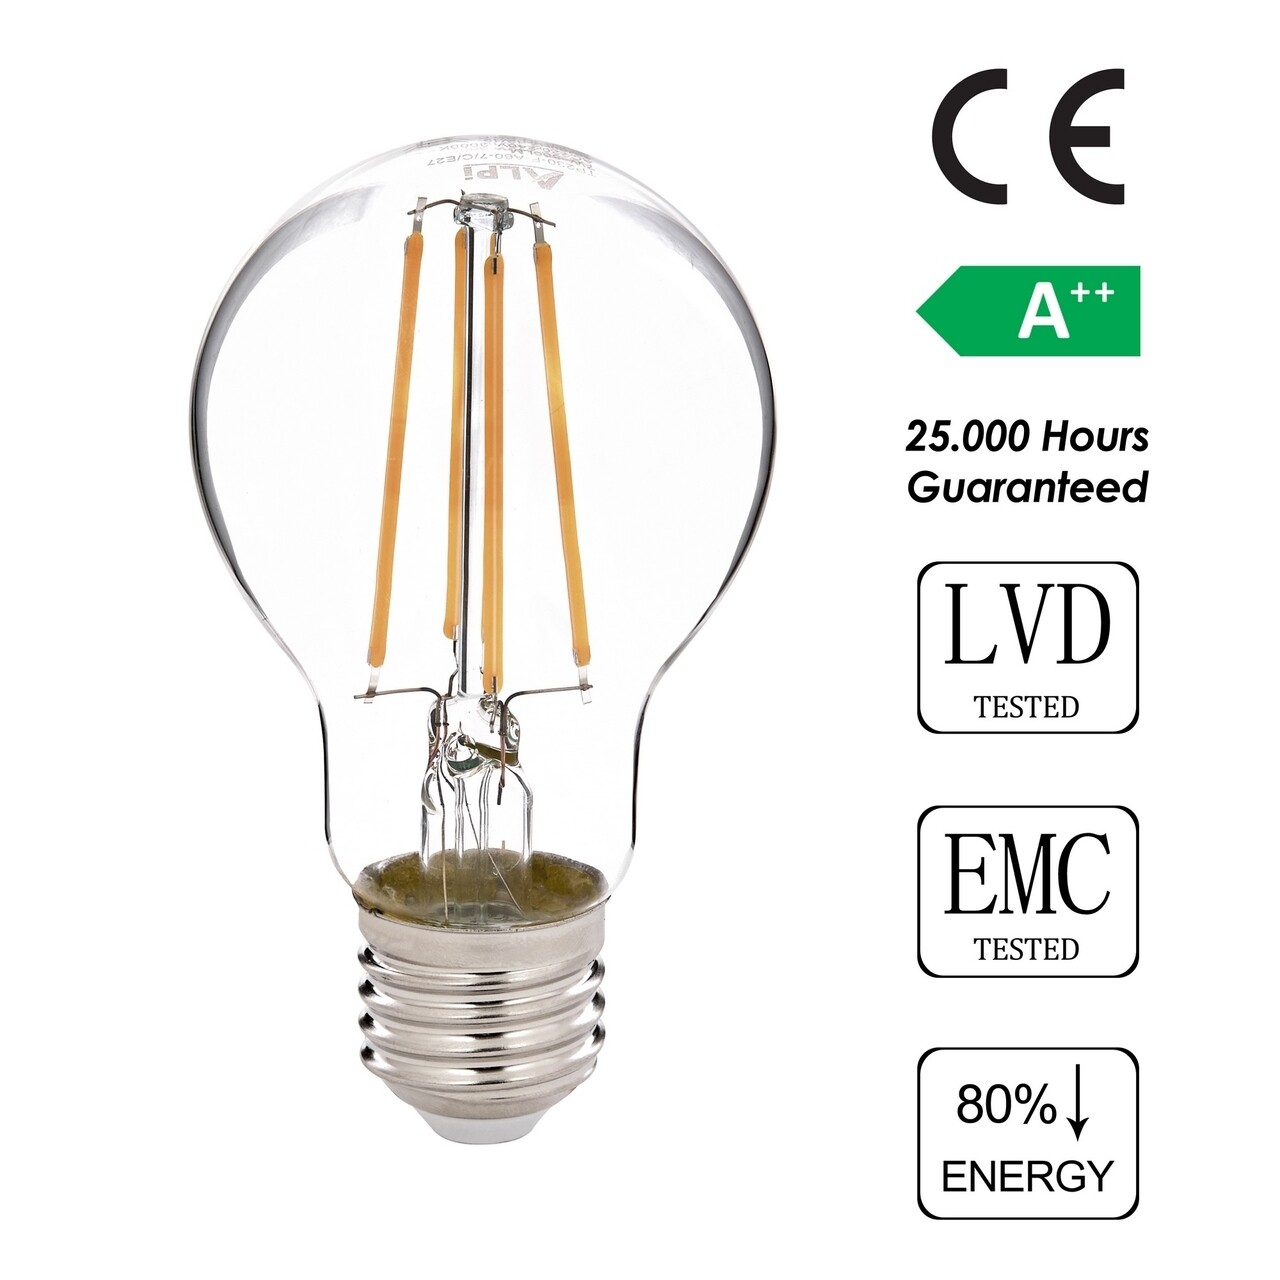 LED Villanykörte, Sage, E27 A60 Gün Işığı, E27, 7 W, 3000K, 806 Lm, üveg